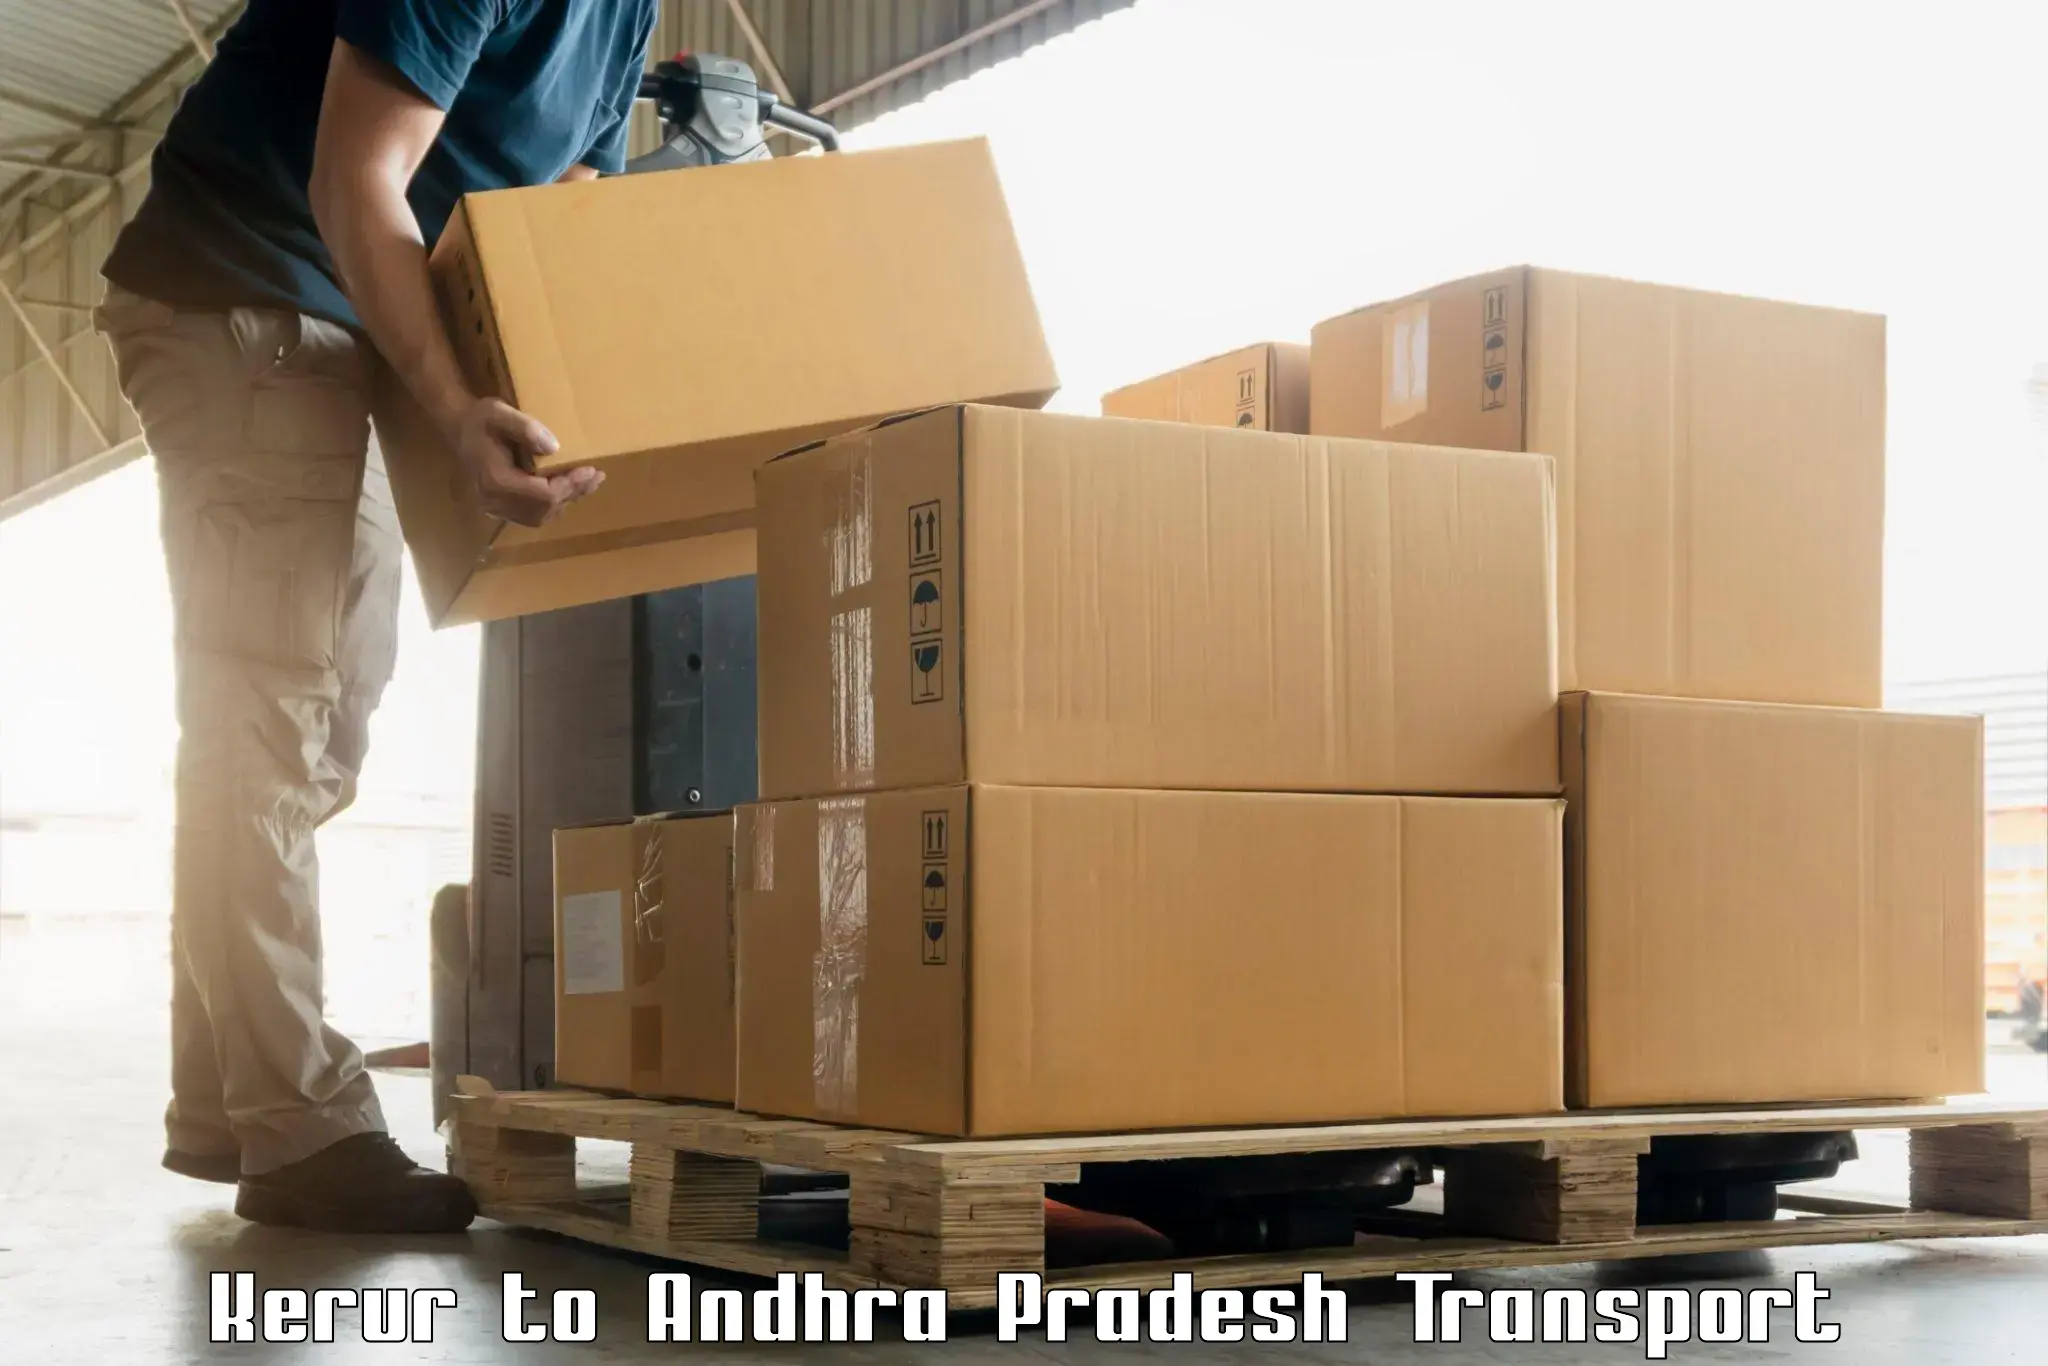 Cargo transport services in Kerur to Amarapuram